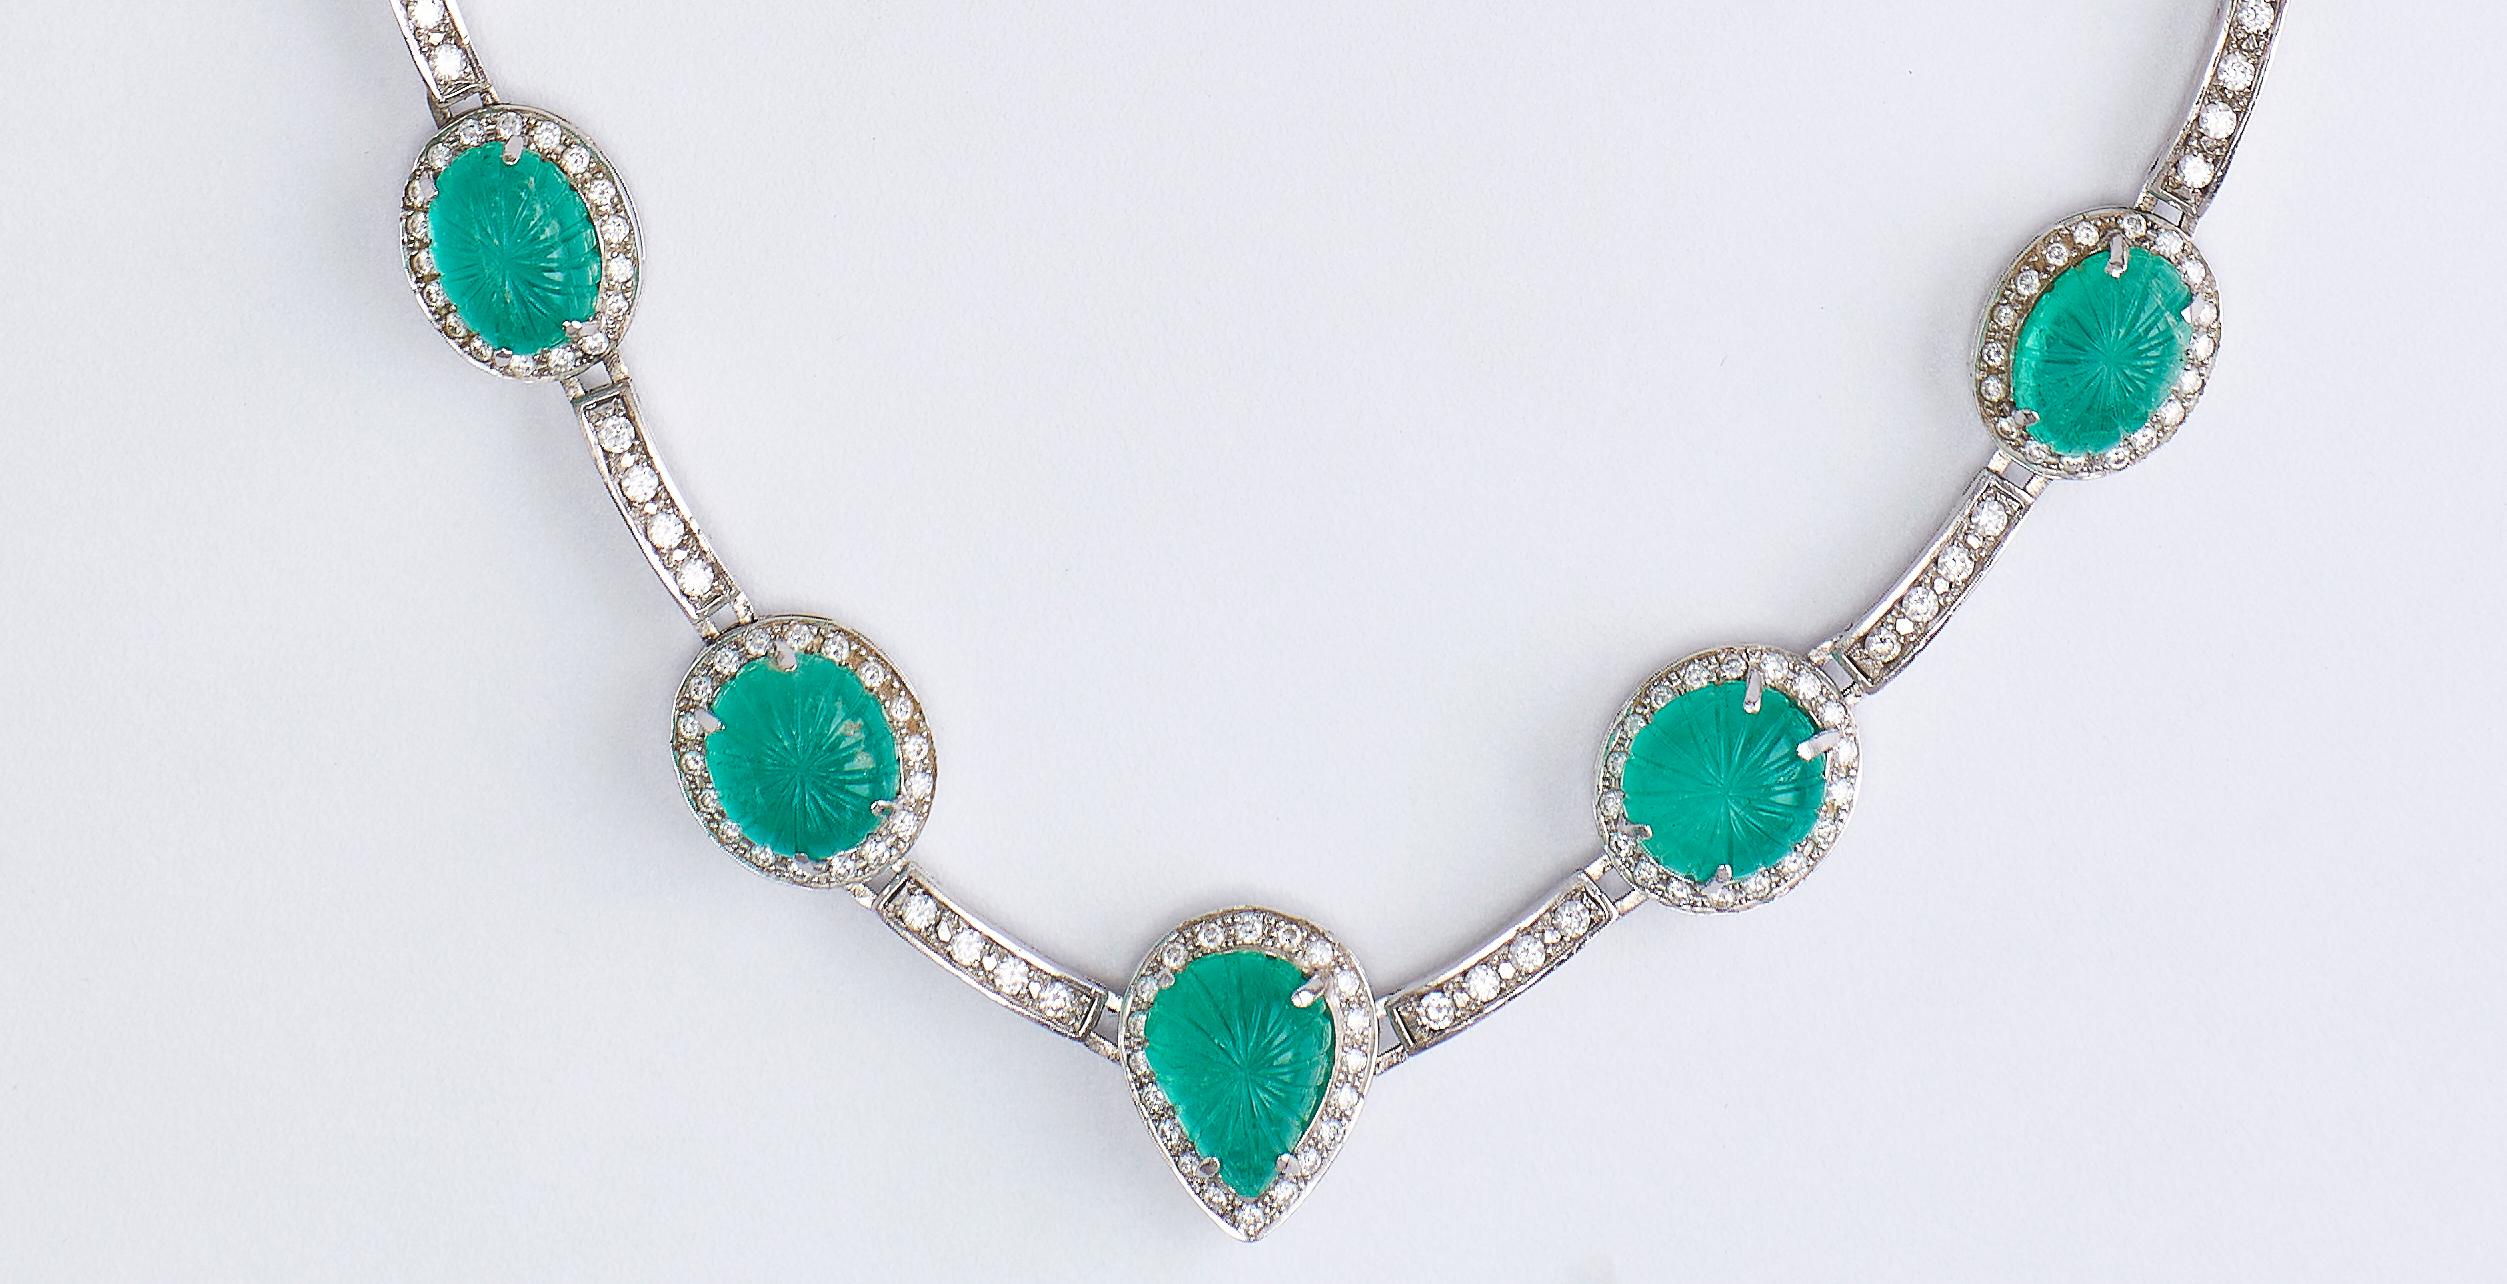 18k Weißgold Halskette mit Smaragden und Diamanten zertifiziert
Atemberaubende Halskette, besetzt mit 9 Smaragden Cabochon (Birne - Oval - Rund) insgesamt 39,00 ct Smaragd. 
Jeder Smaragd ist von Diamanten umgeben, und zwischen jeweils 2 Steinen